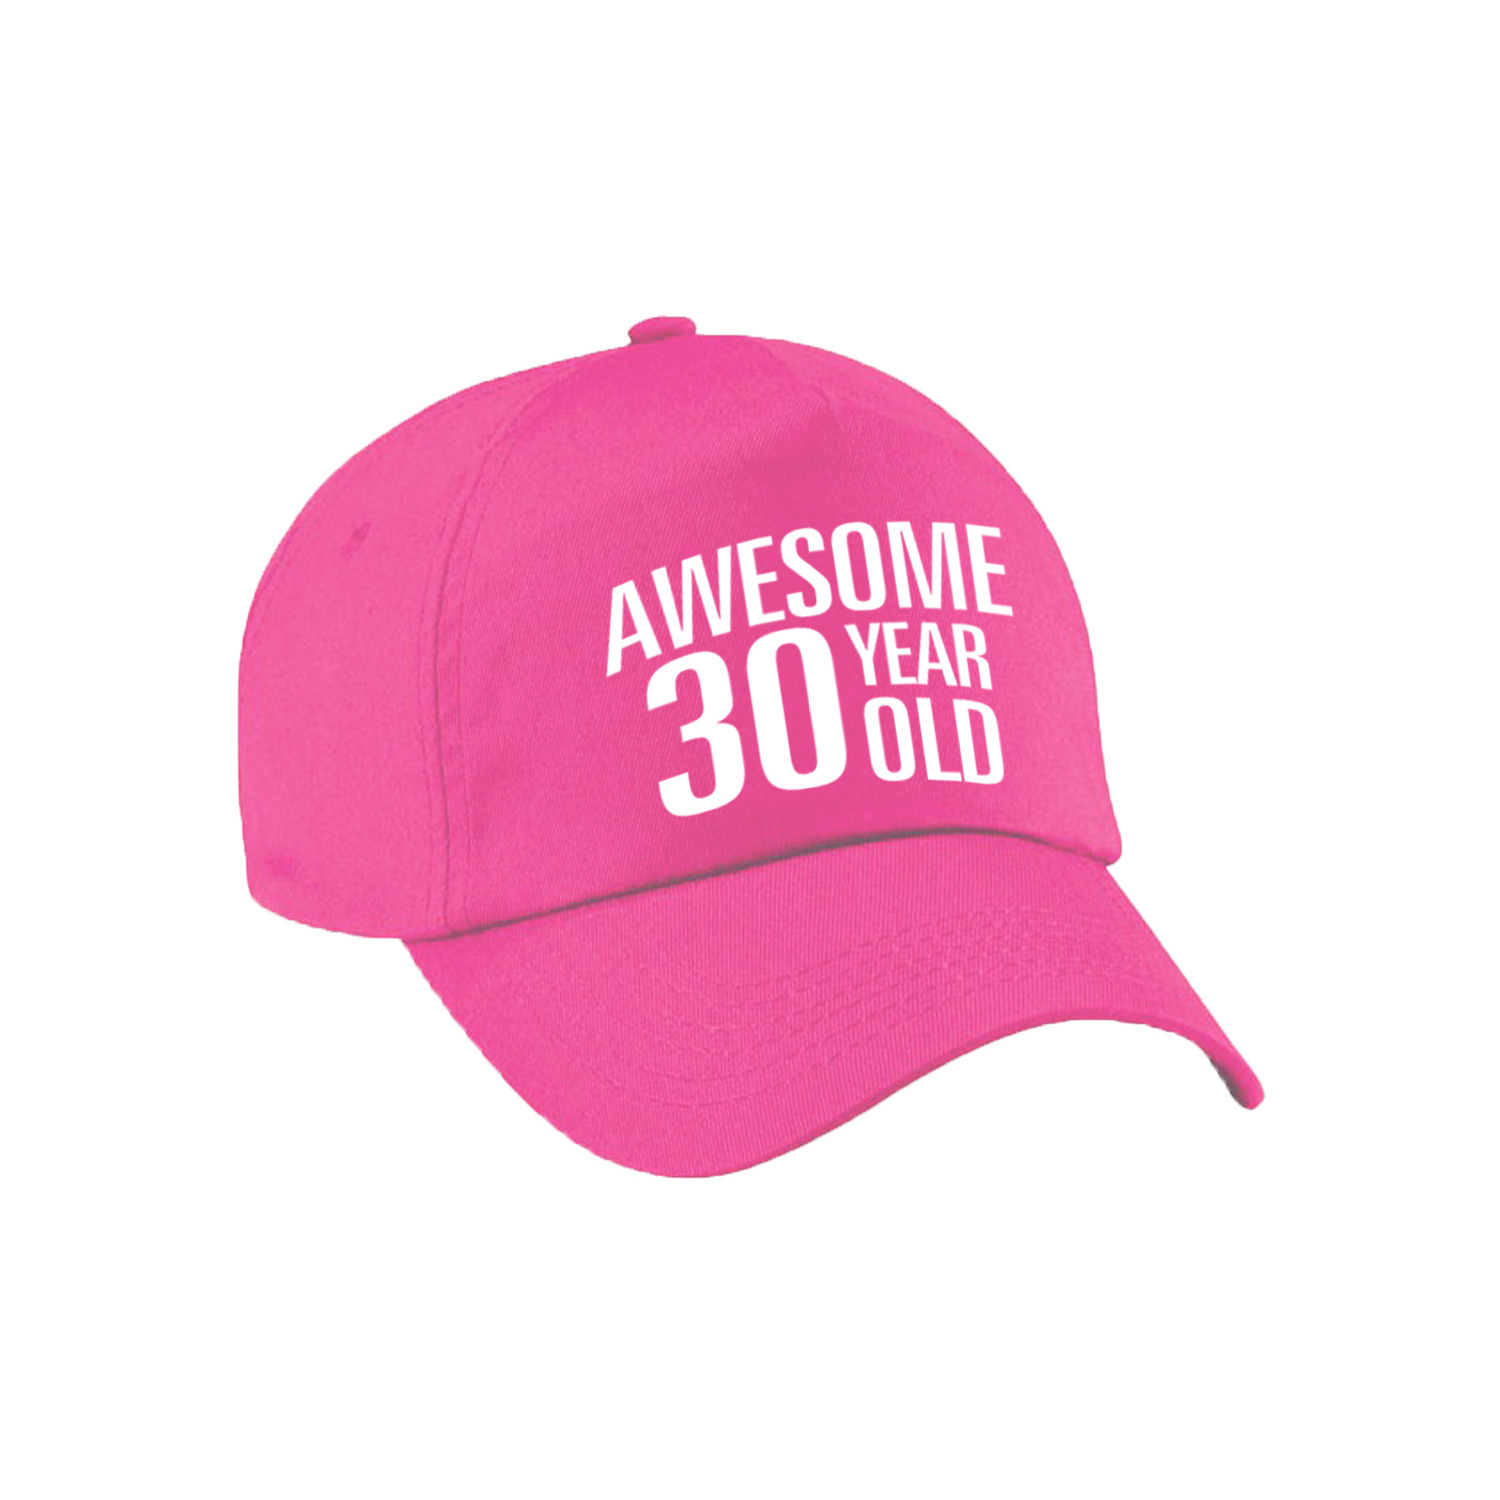 Awesome 30 year old verjaardag pet-cap roze voor dames en heren